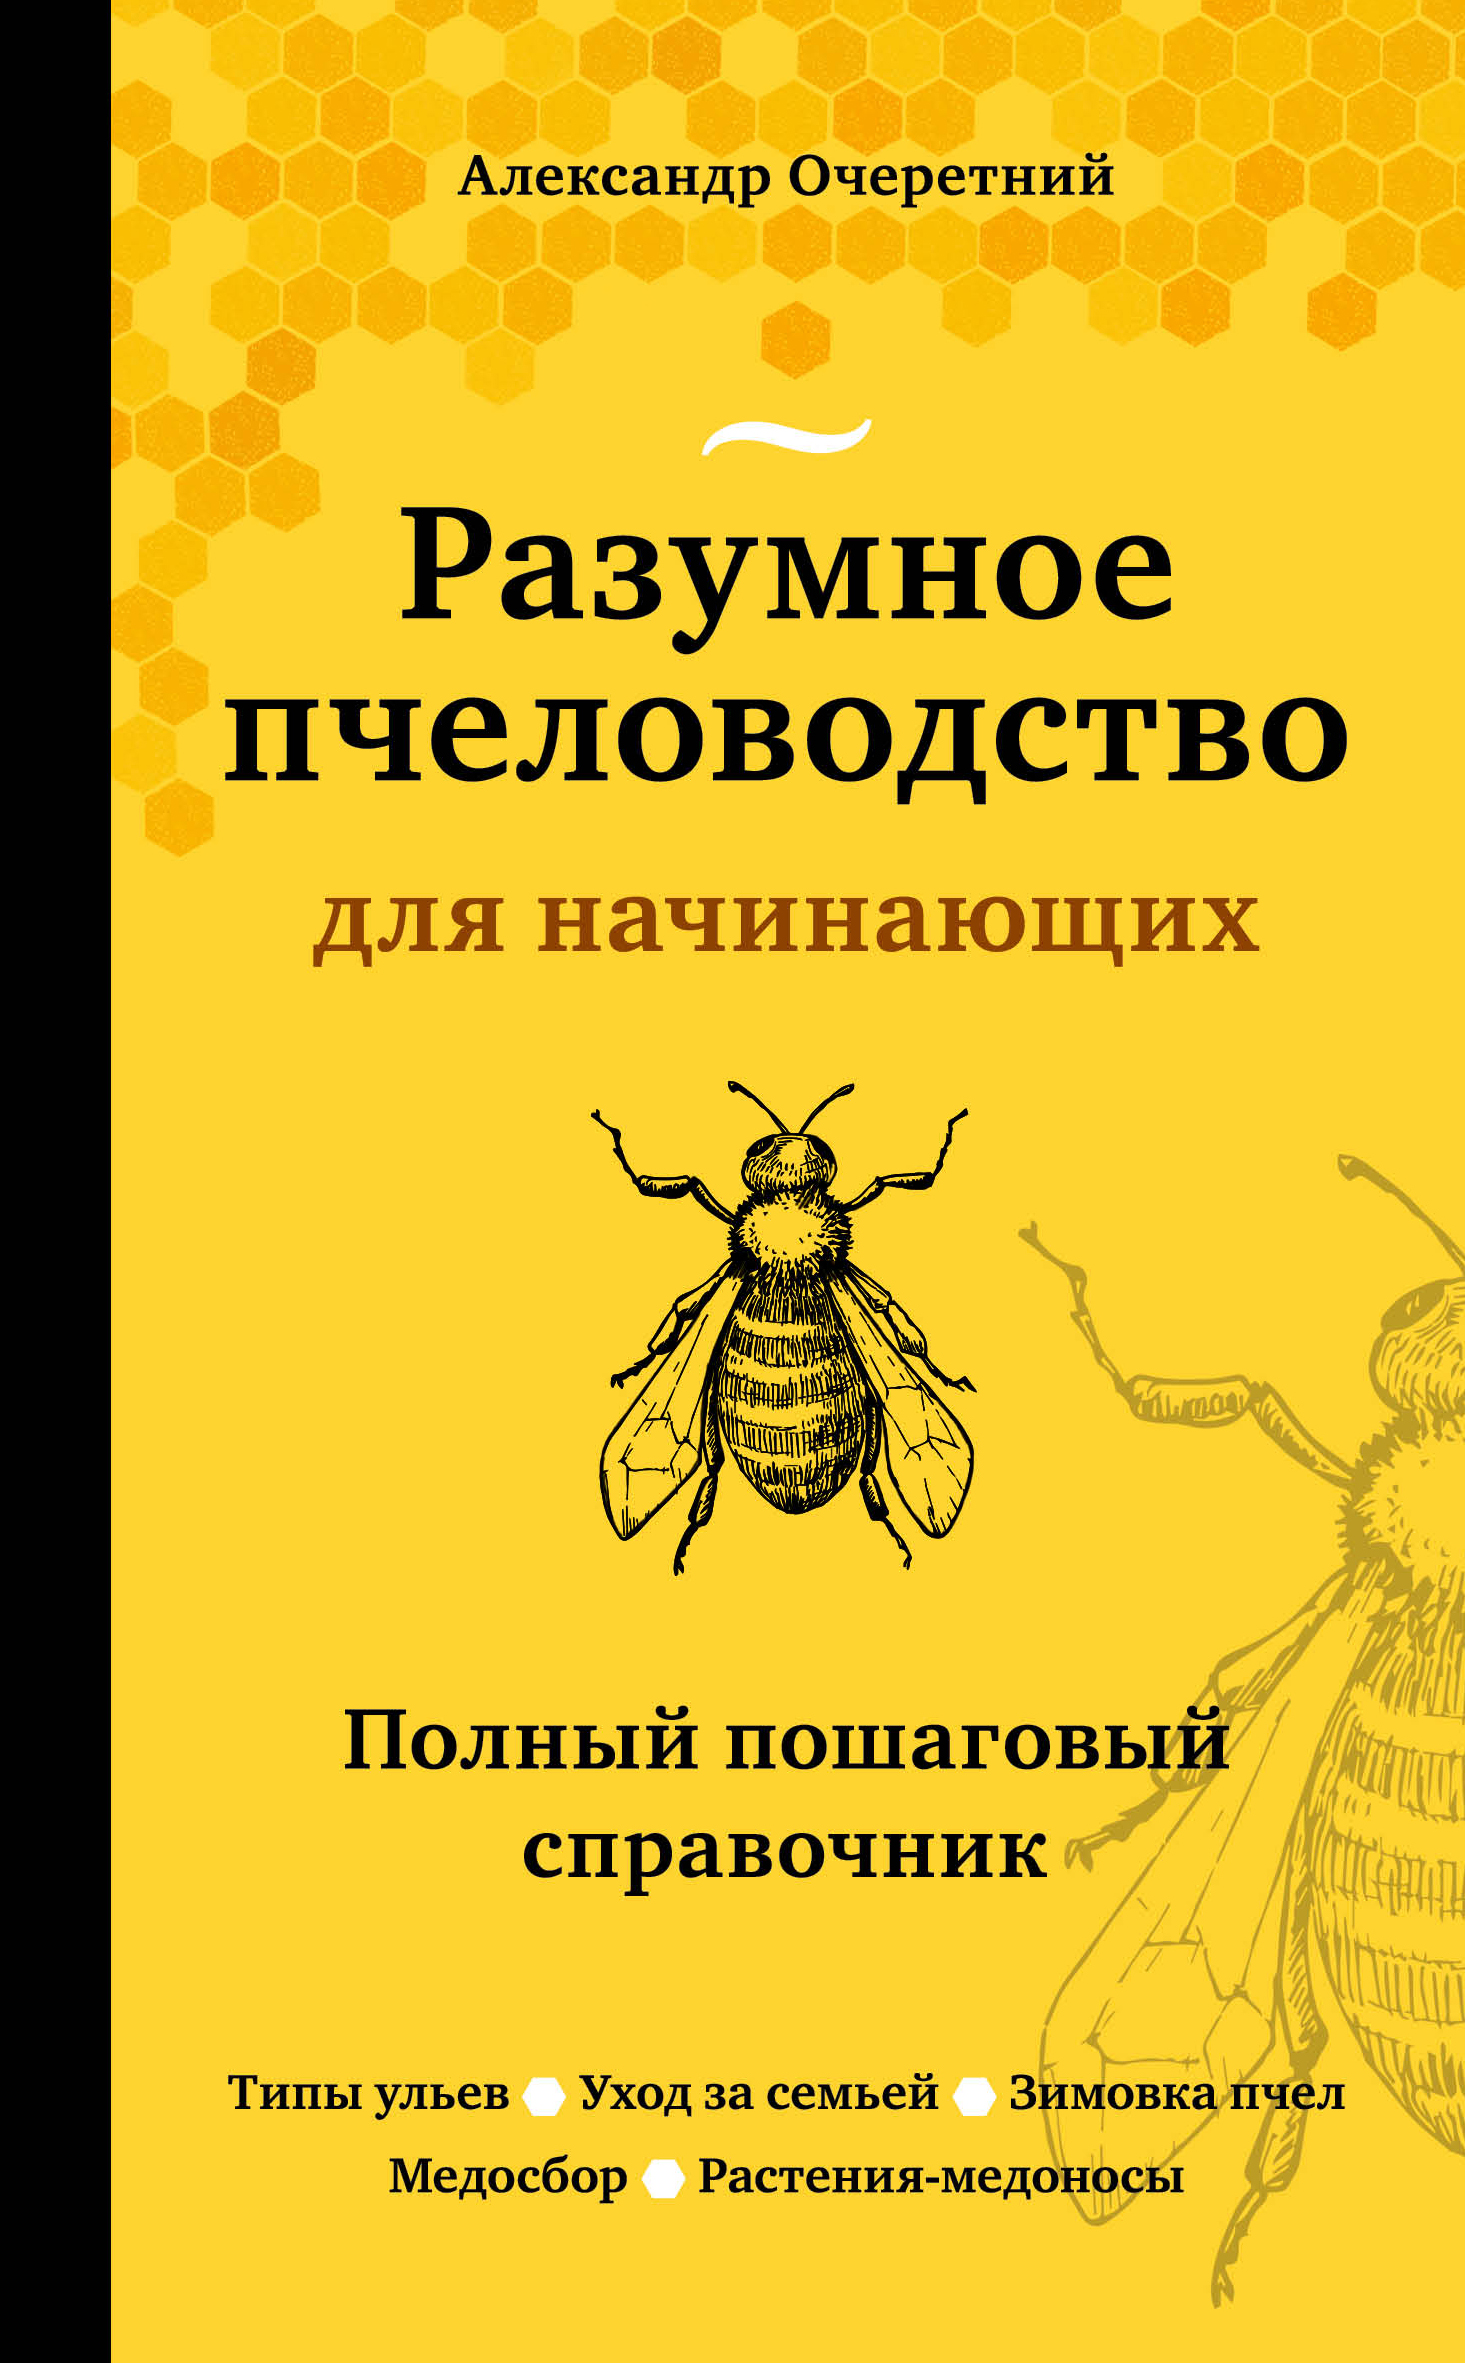 Очеретний А.Д. Разумное пчеловодство для начинающих. Полный пошаговый справочник (новое оформление) 